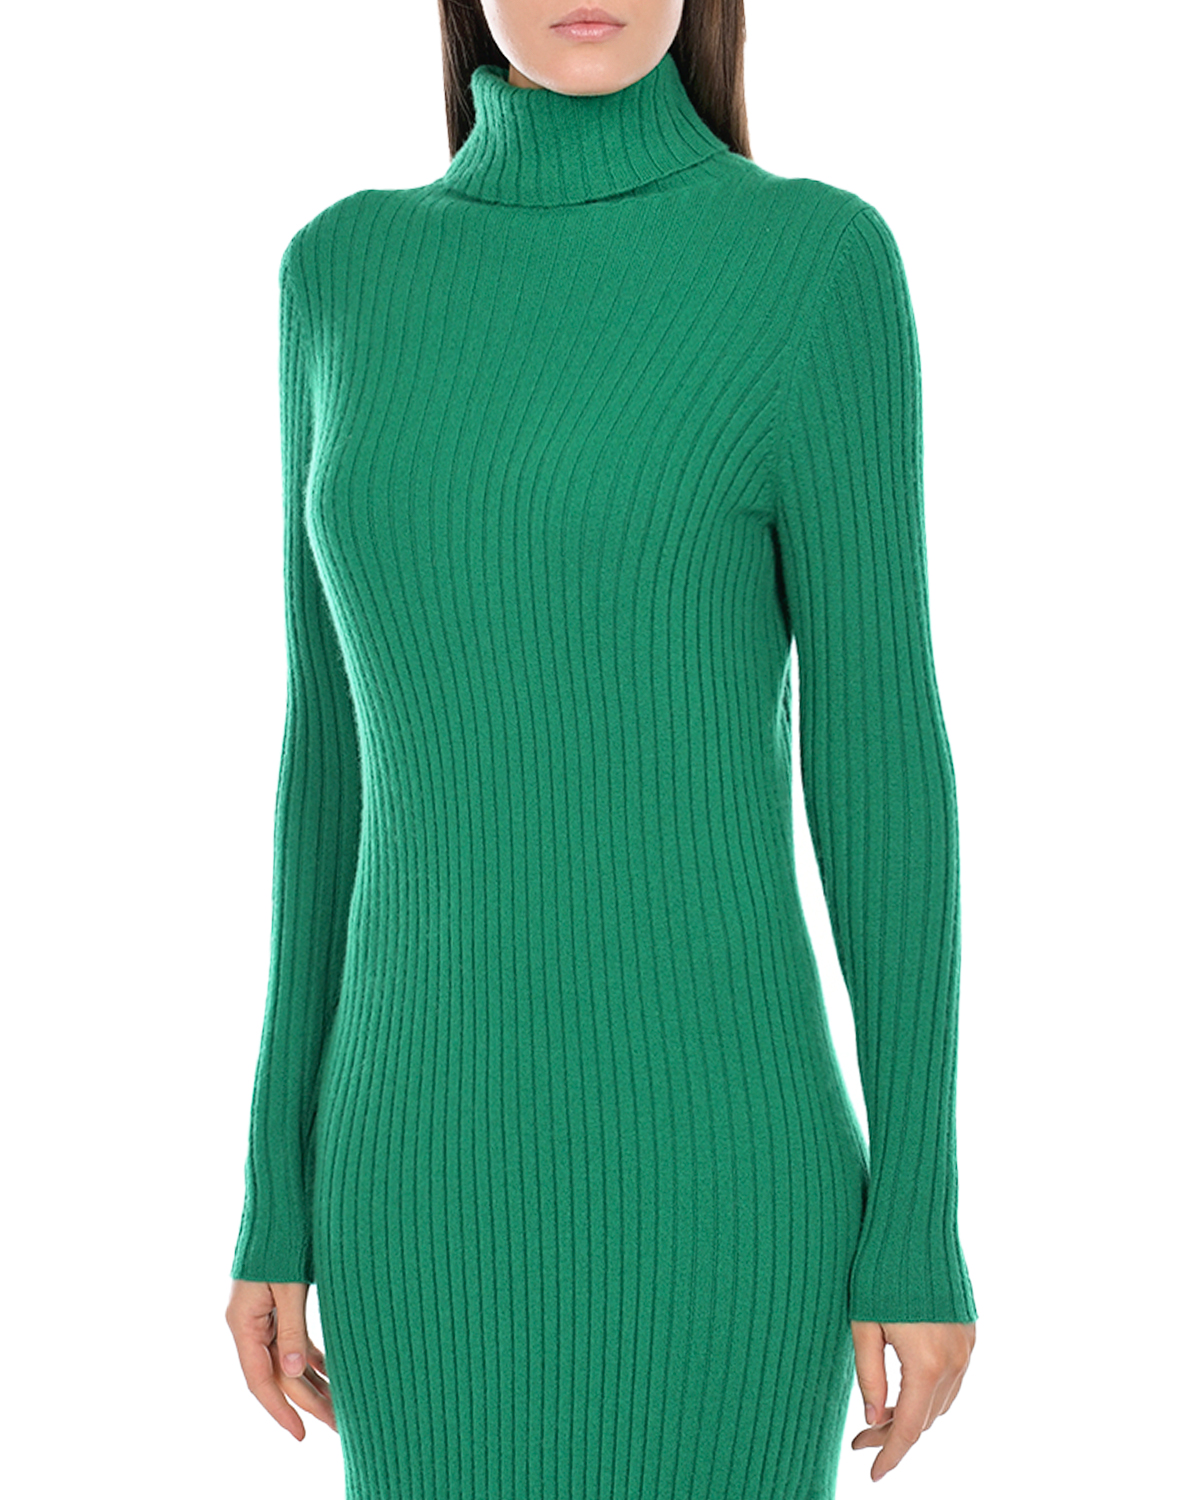 Платье из кашемира зеленого цвета Allude, размер 38 - фото 7